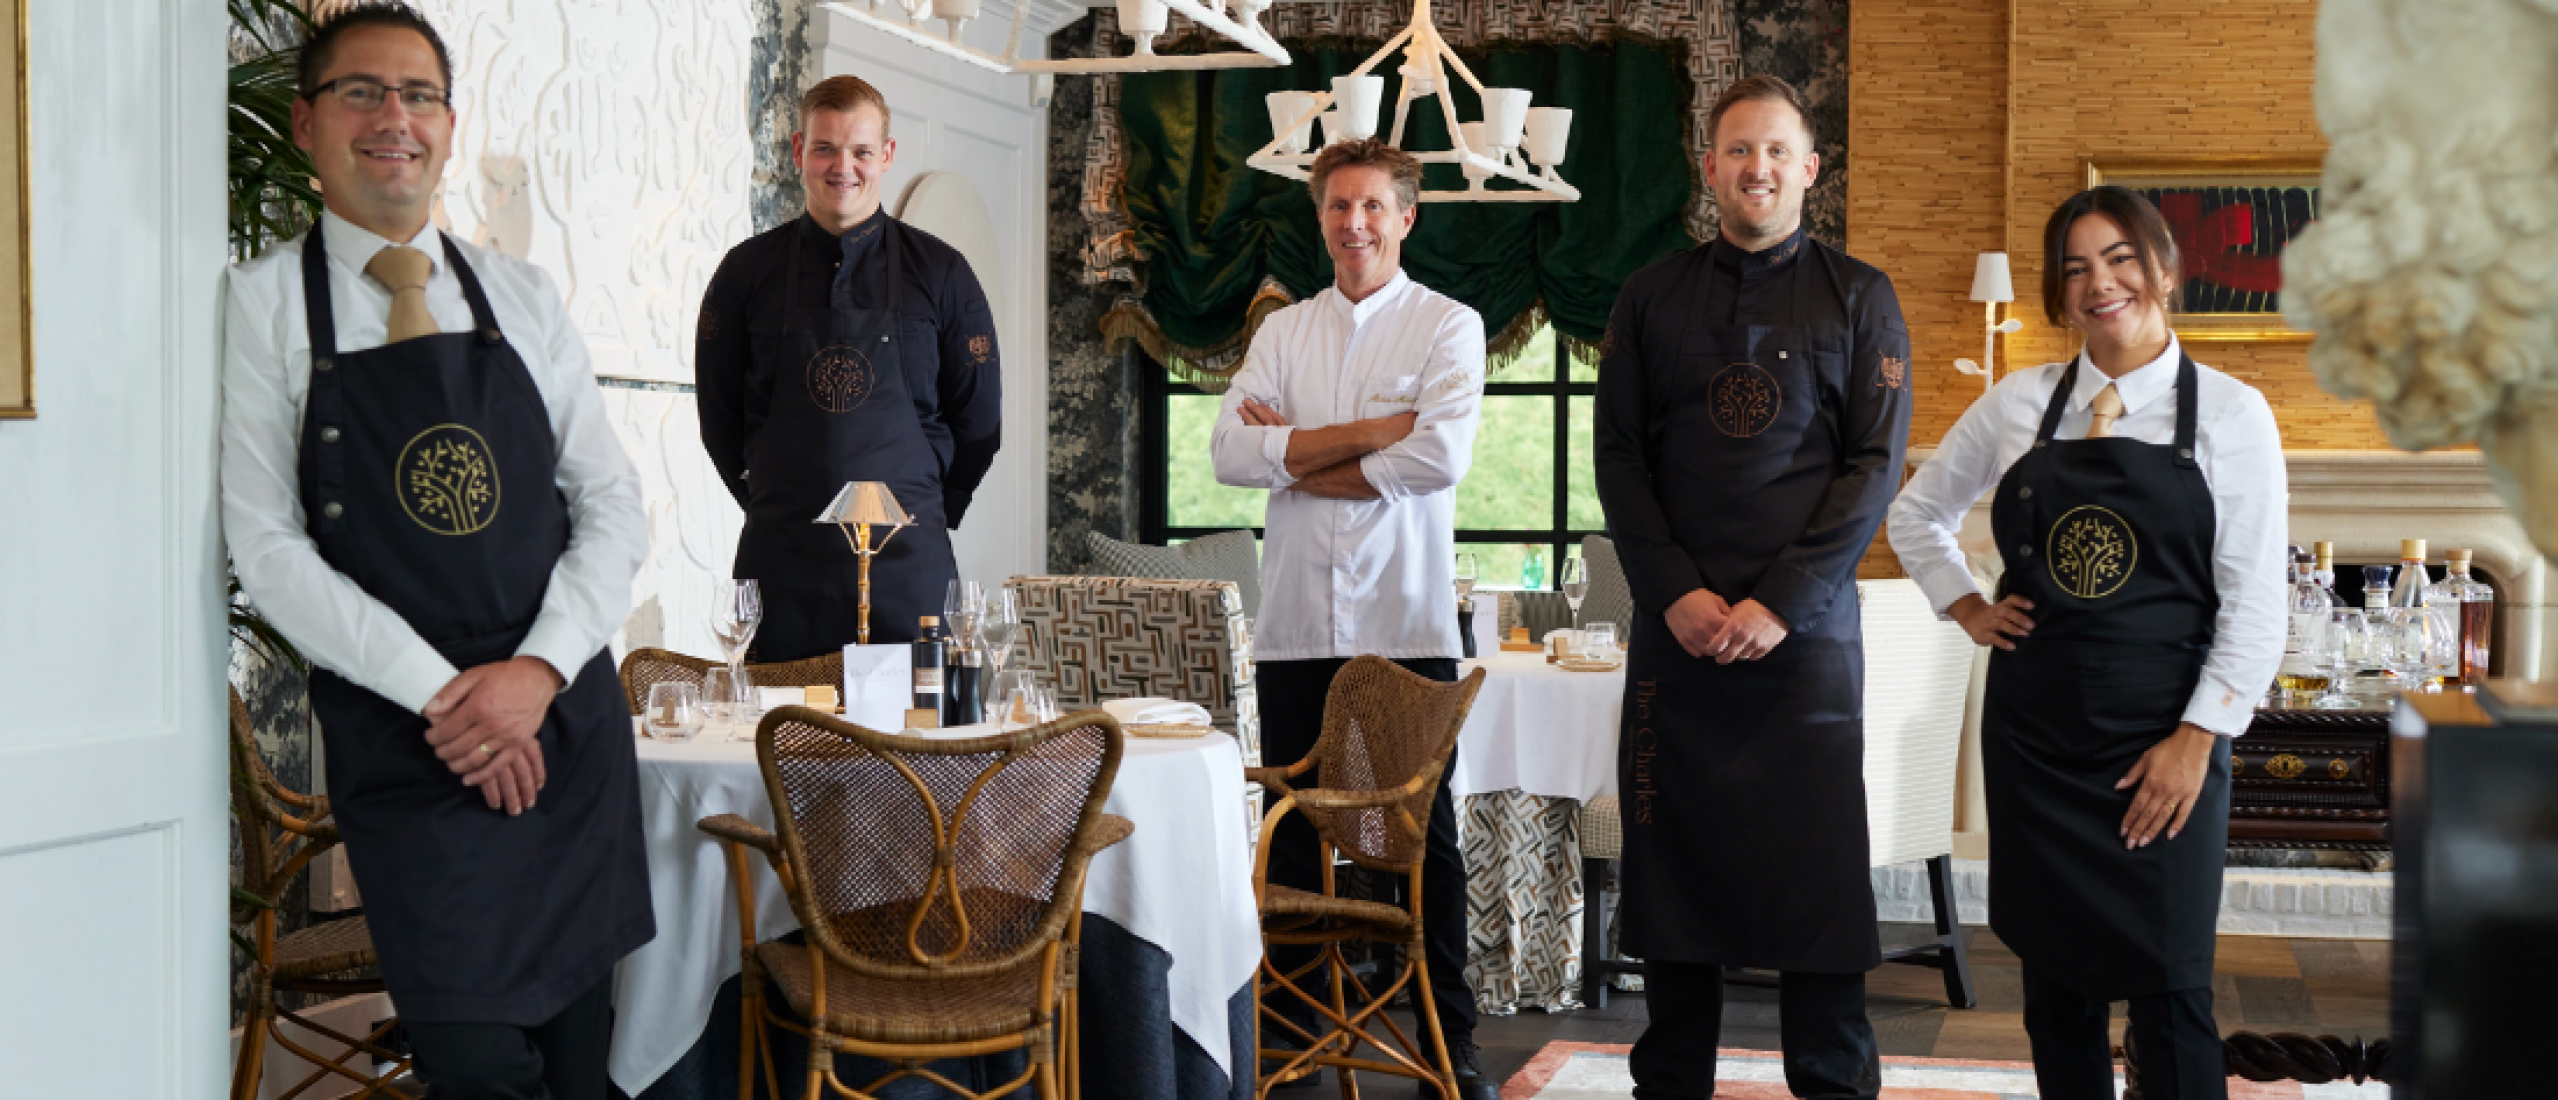 Noord-Brabant heeft er een toprestaurant bij: The Charles opent onder leiding van sterrenchef Alain Alders.